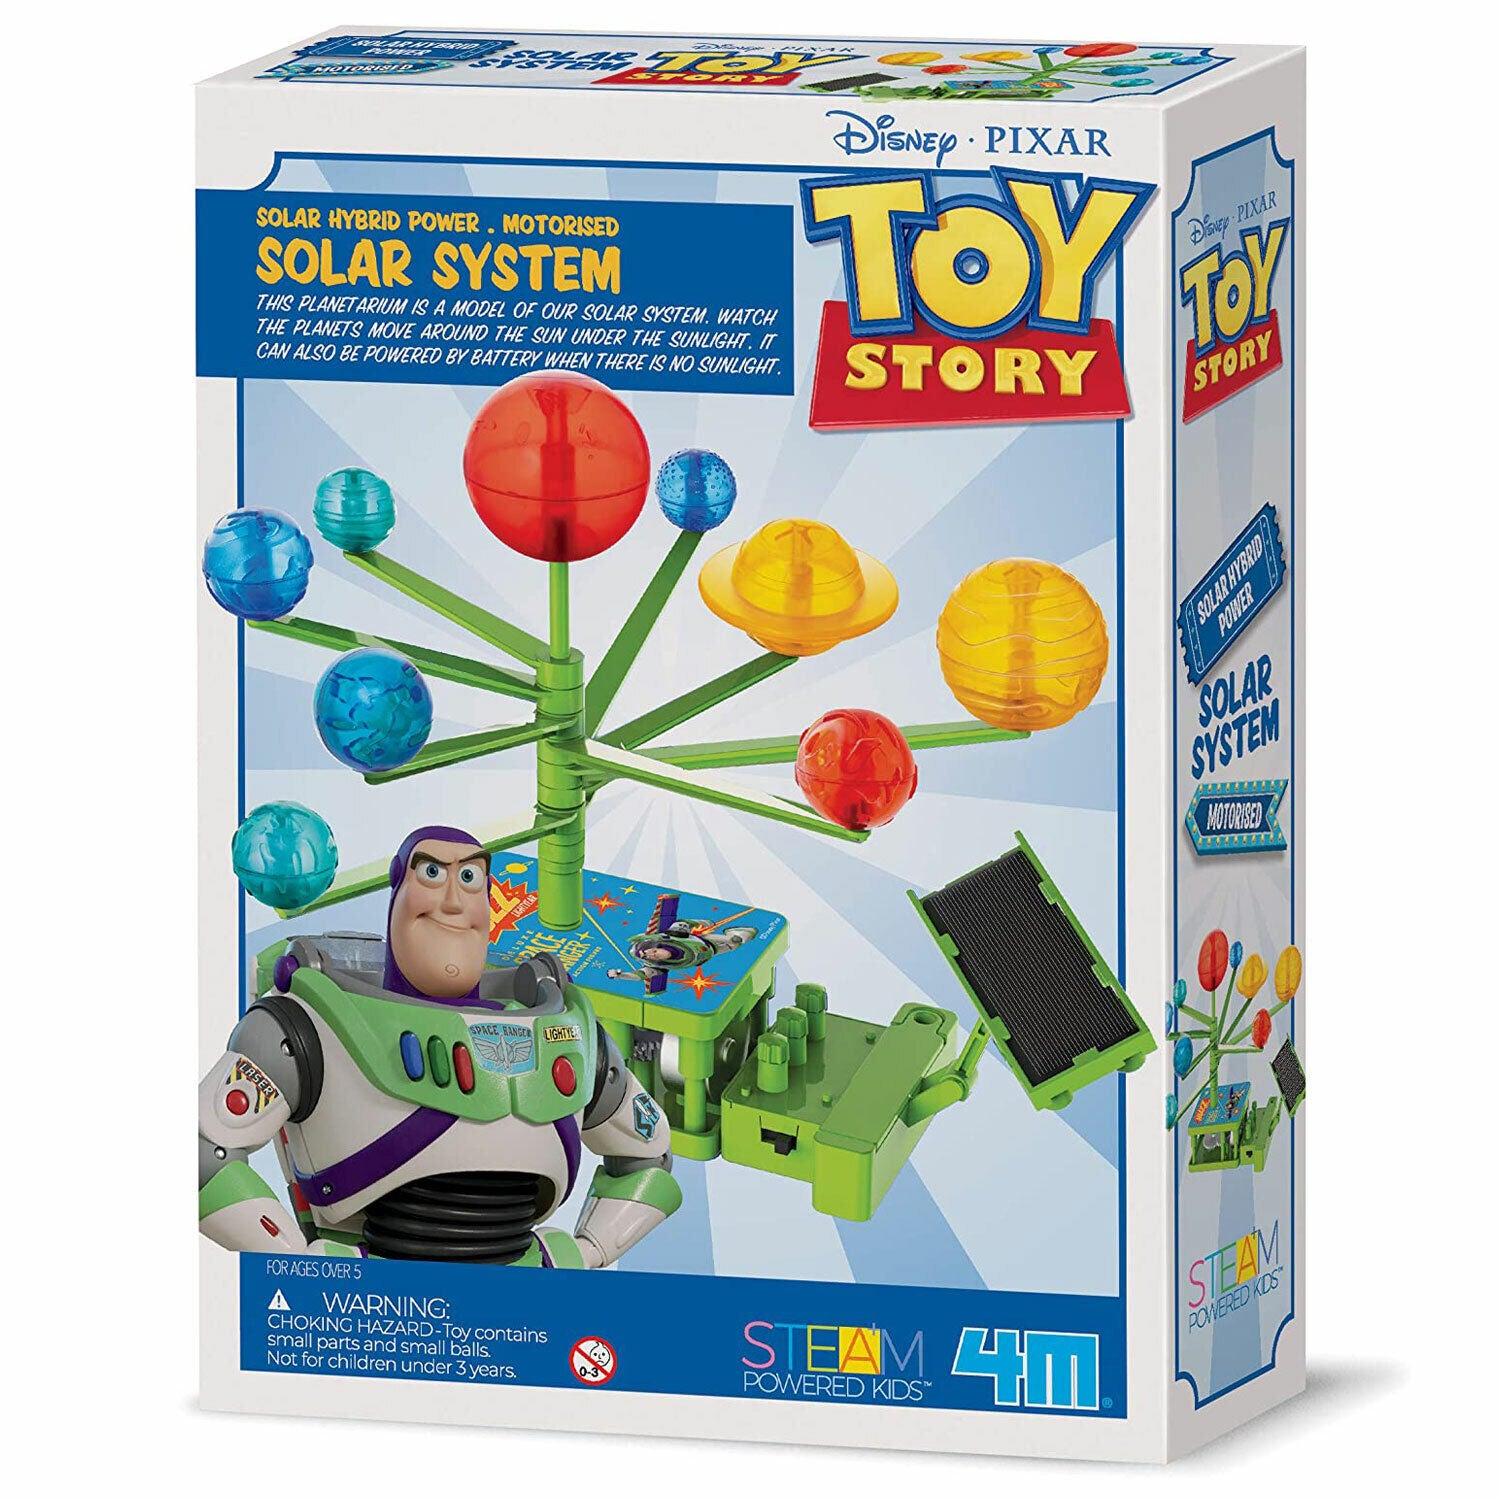 New Disney Pixar Toy Story Solar Hybrid System Kit - Solar Powered